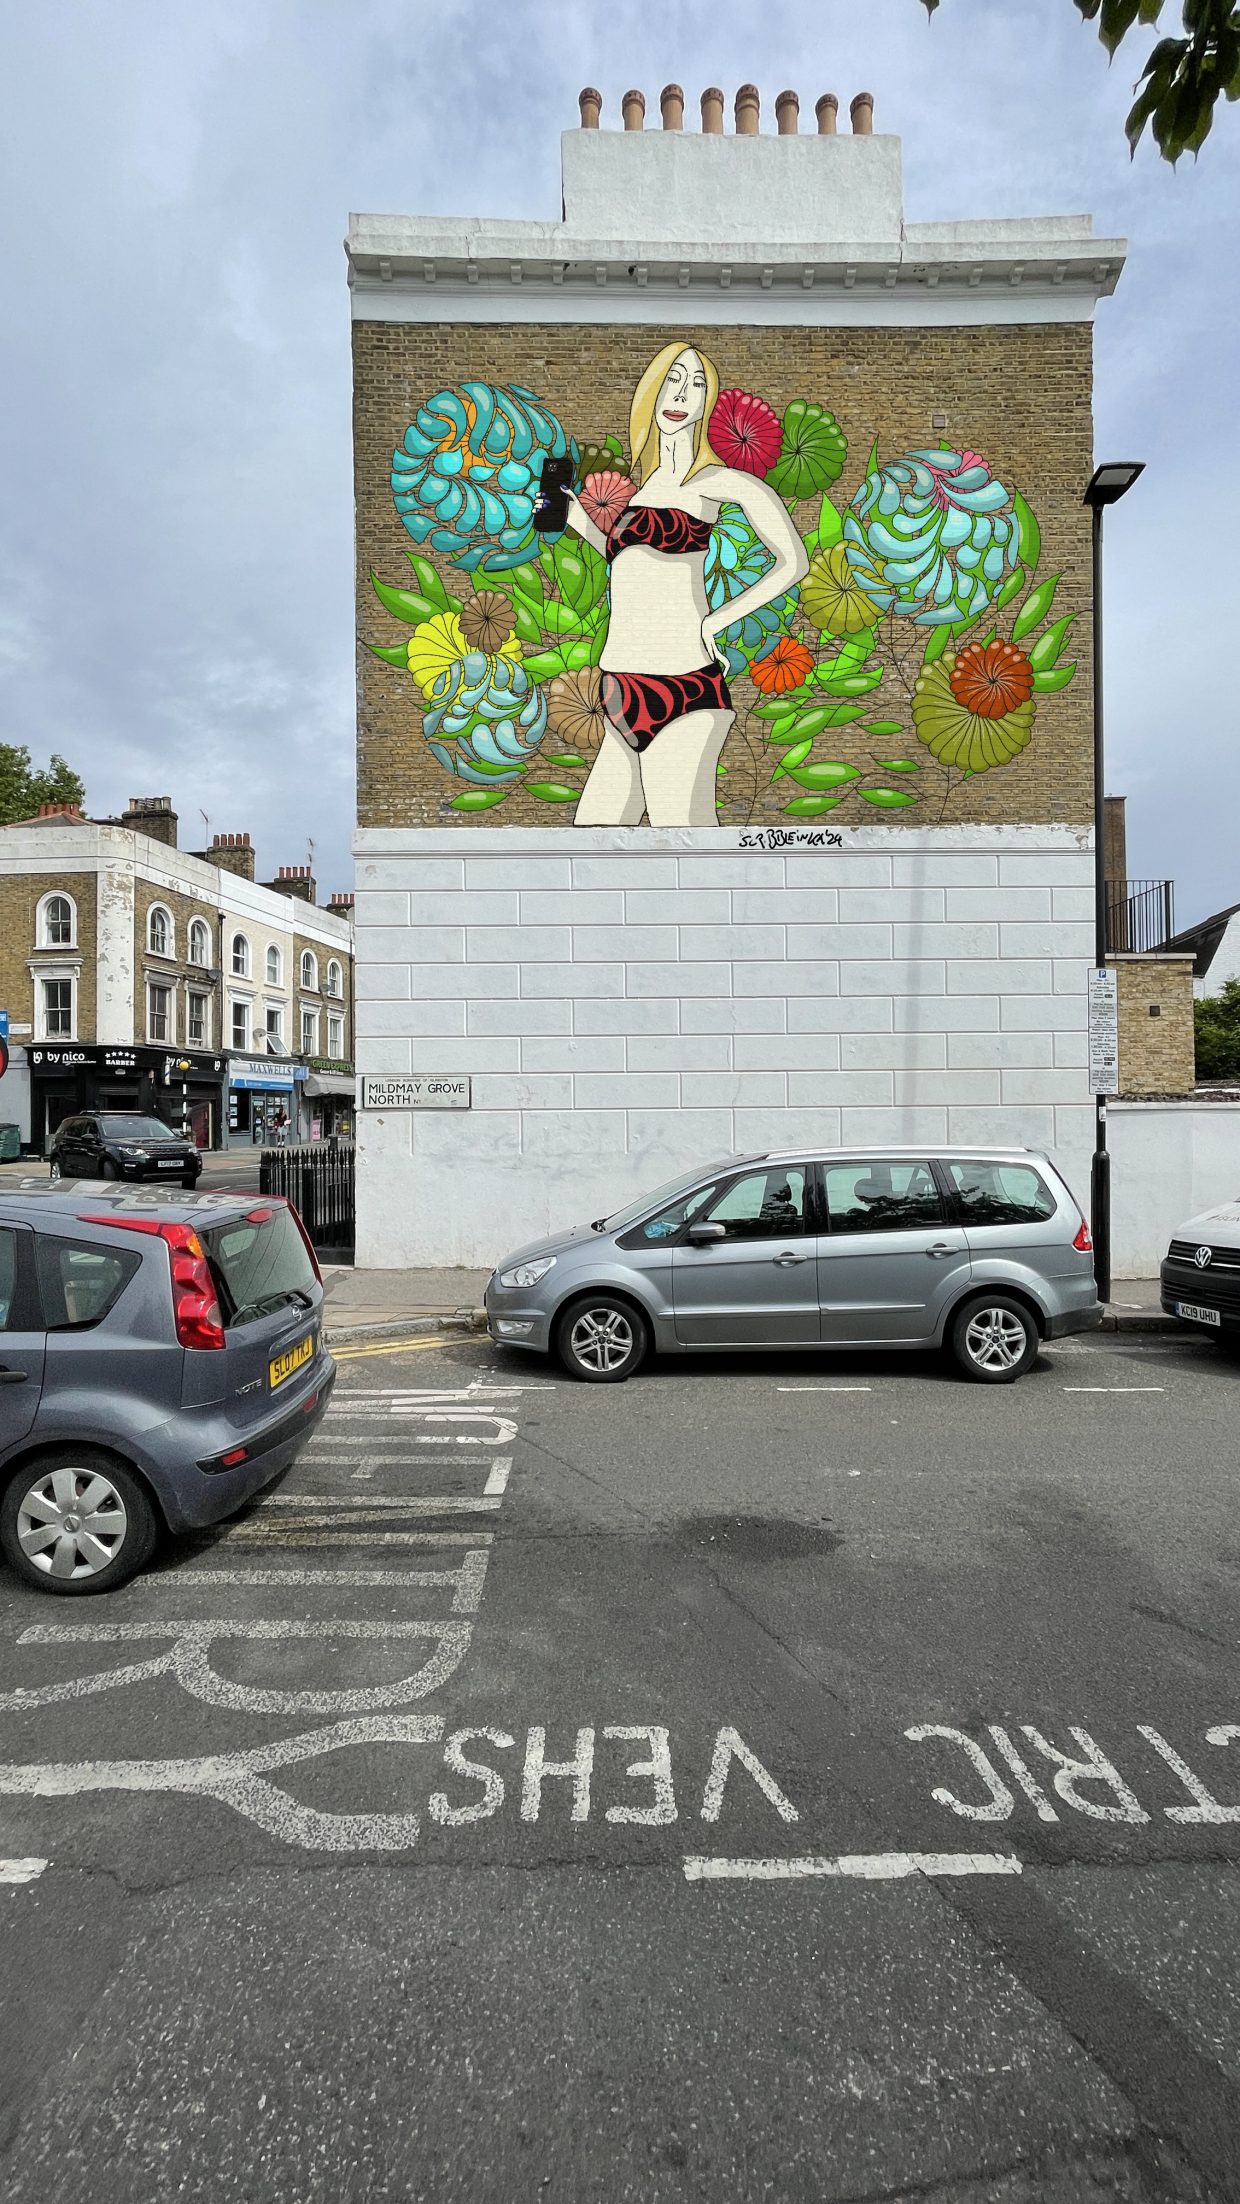 Parkplatz in London. Die Außenwand eines Hauses. Unten weiß. Oben ein Gemälde mit einer weißen Frau im Bikini und einem Handy in der Hand vor einer Blütenwand. Sehr vereinfacht, nicht fotorealistisch.